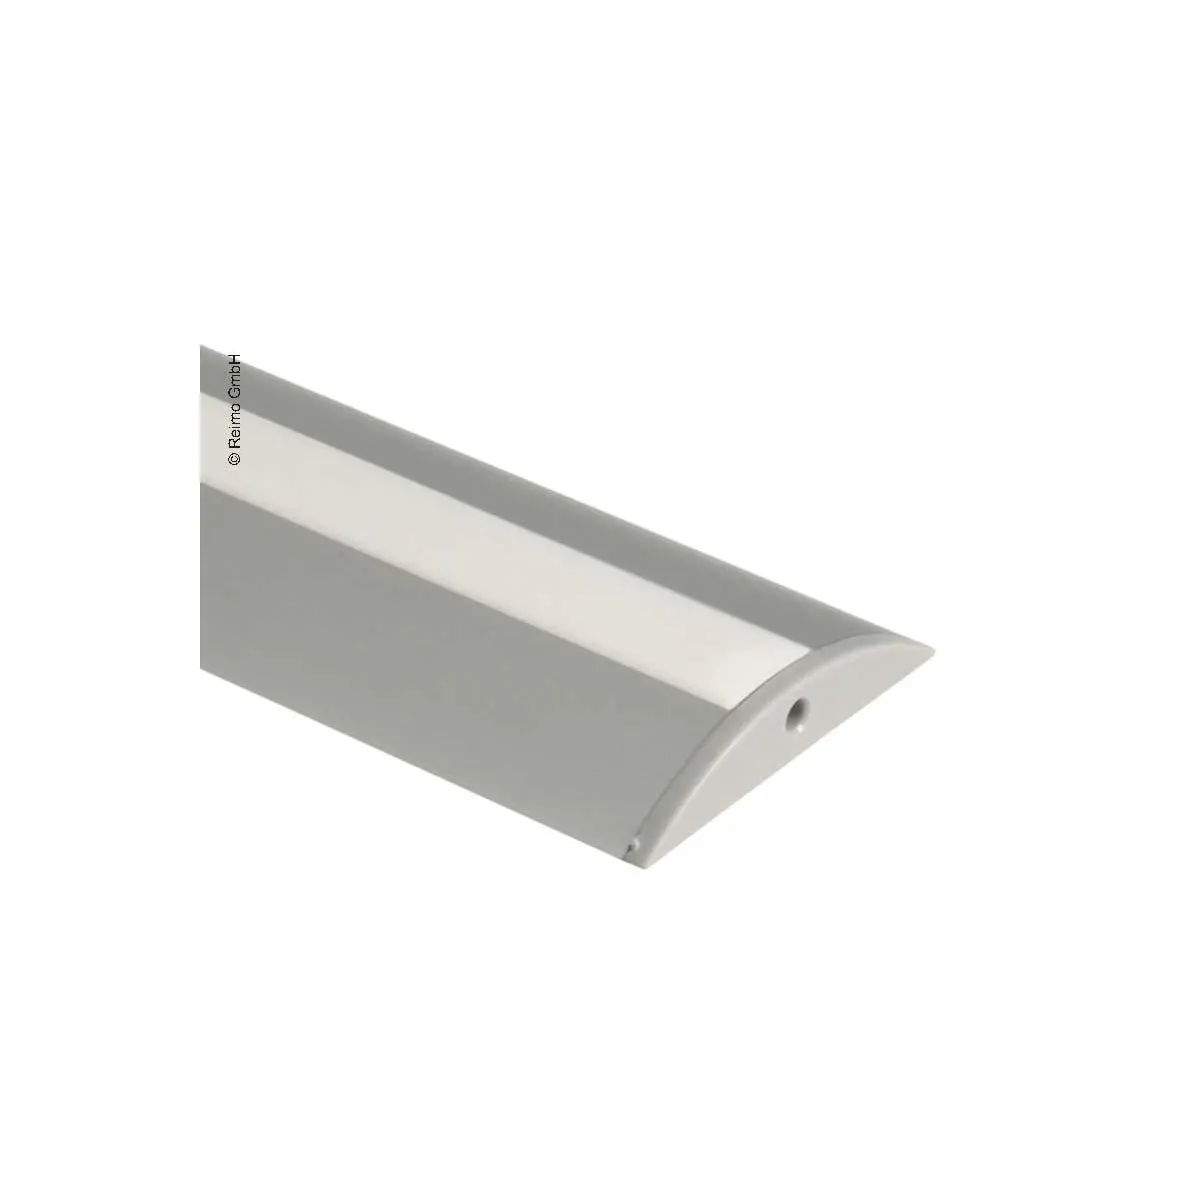 Profil din aluminiu Carbest pentru benzi LED, lungime 1,5m semicircular